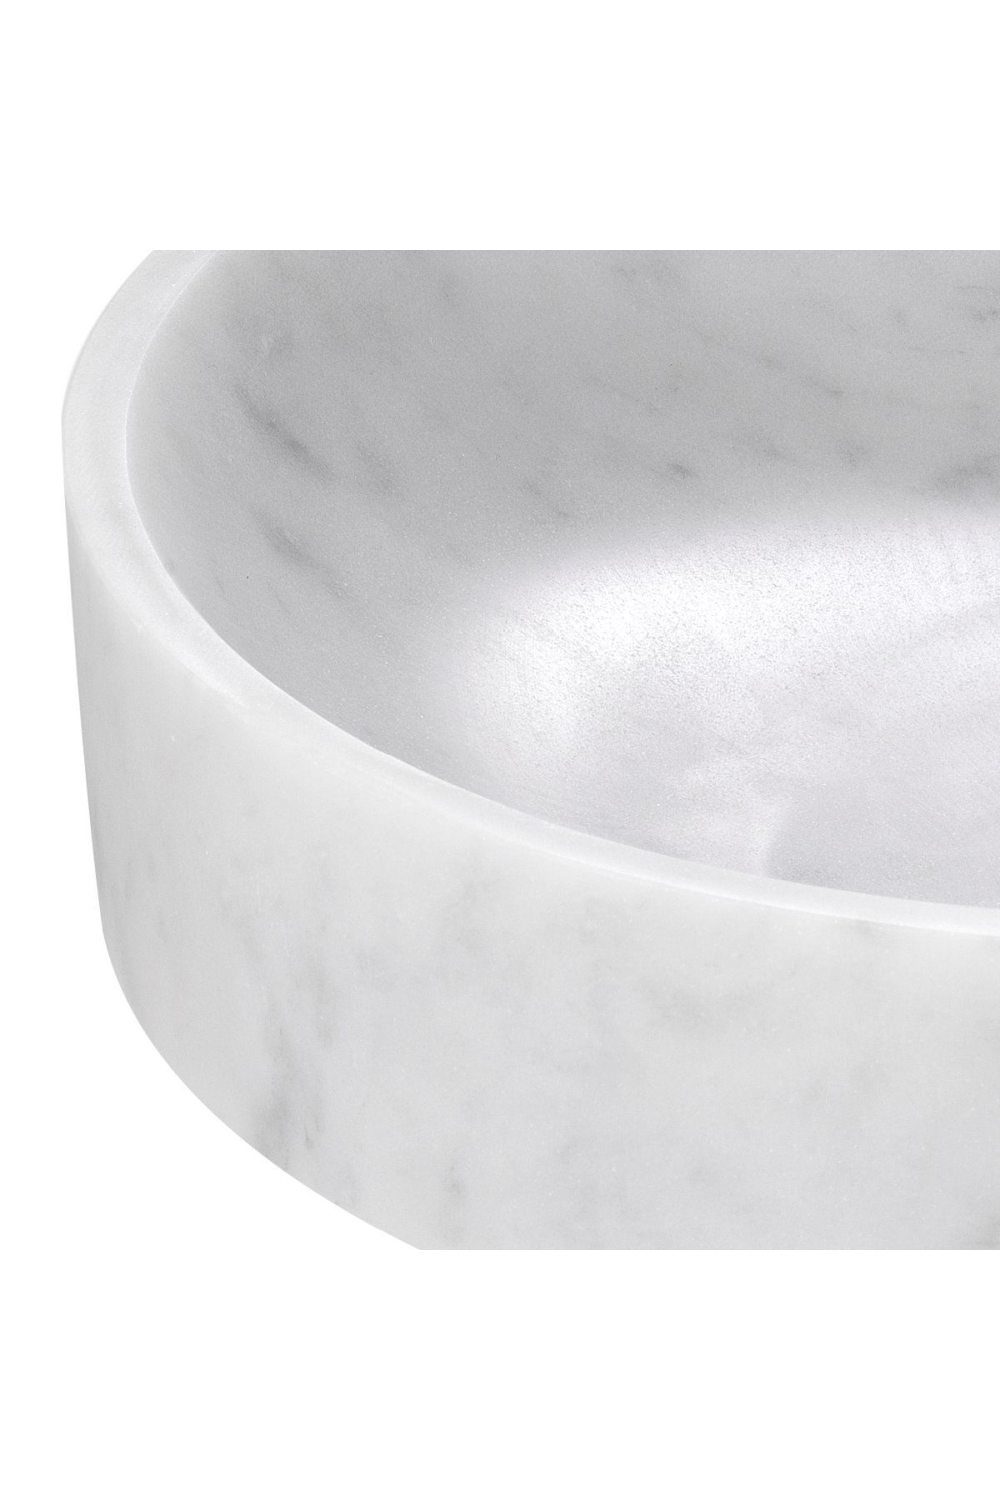 White Marble Decorative Bowl | Eichholtz Santiago | OROA.com